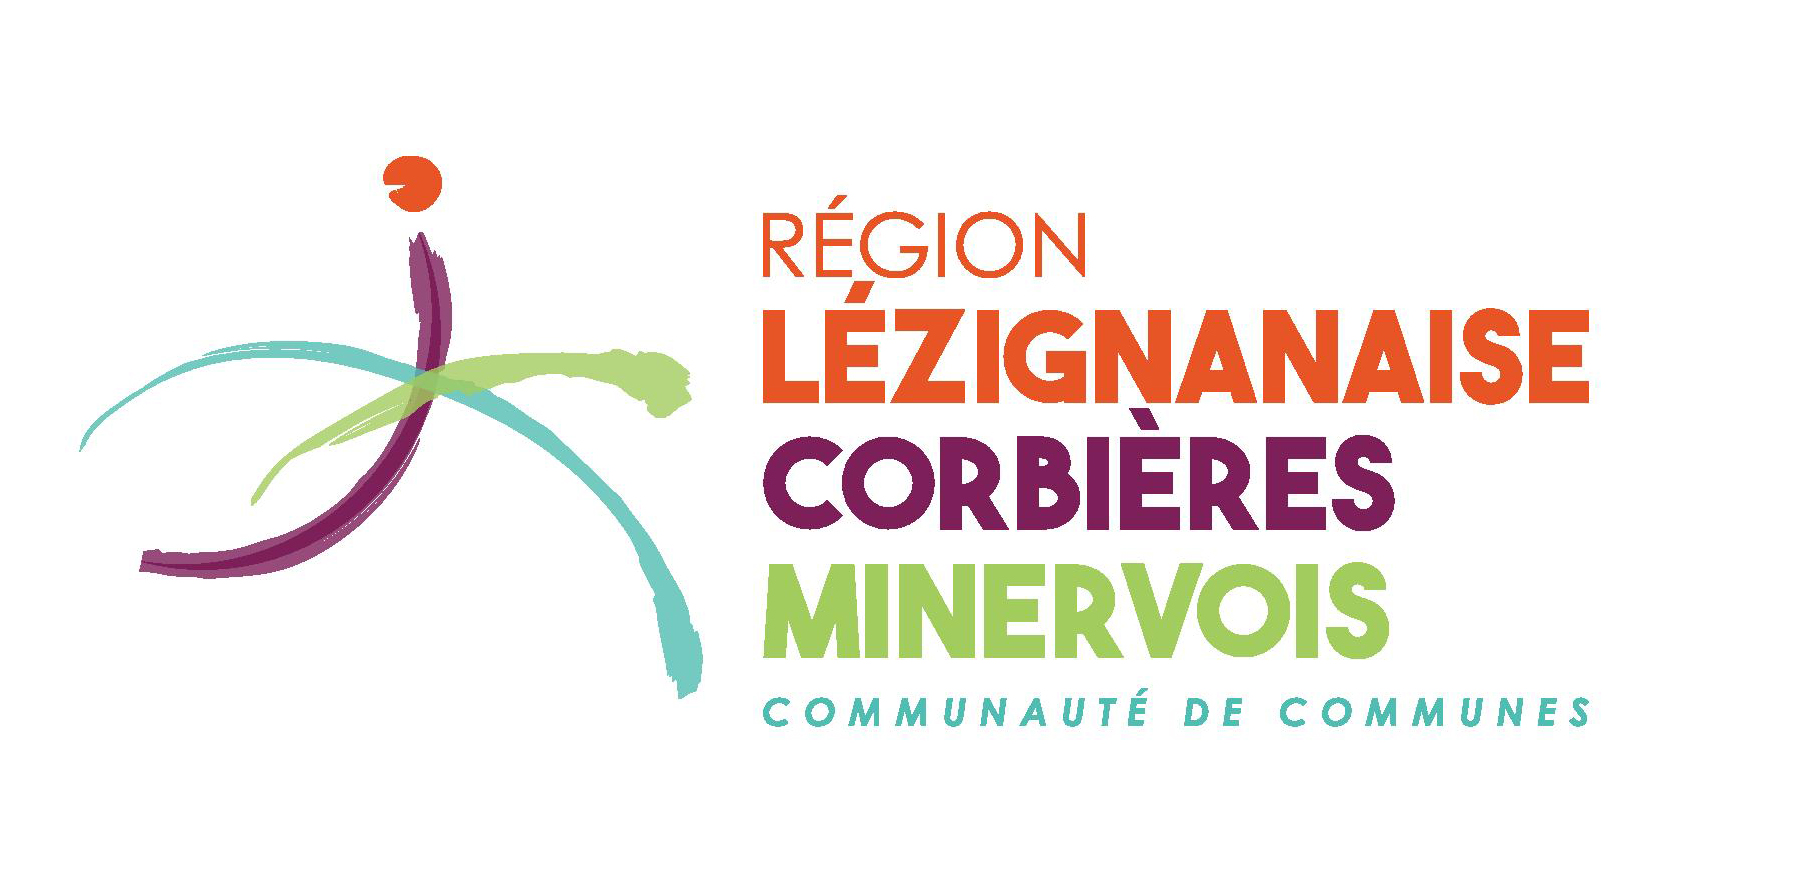 Communauté de Communes Région Léziganaise Corbières Minervois